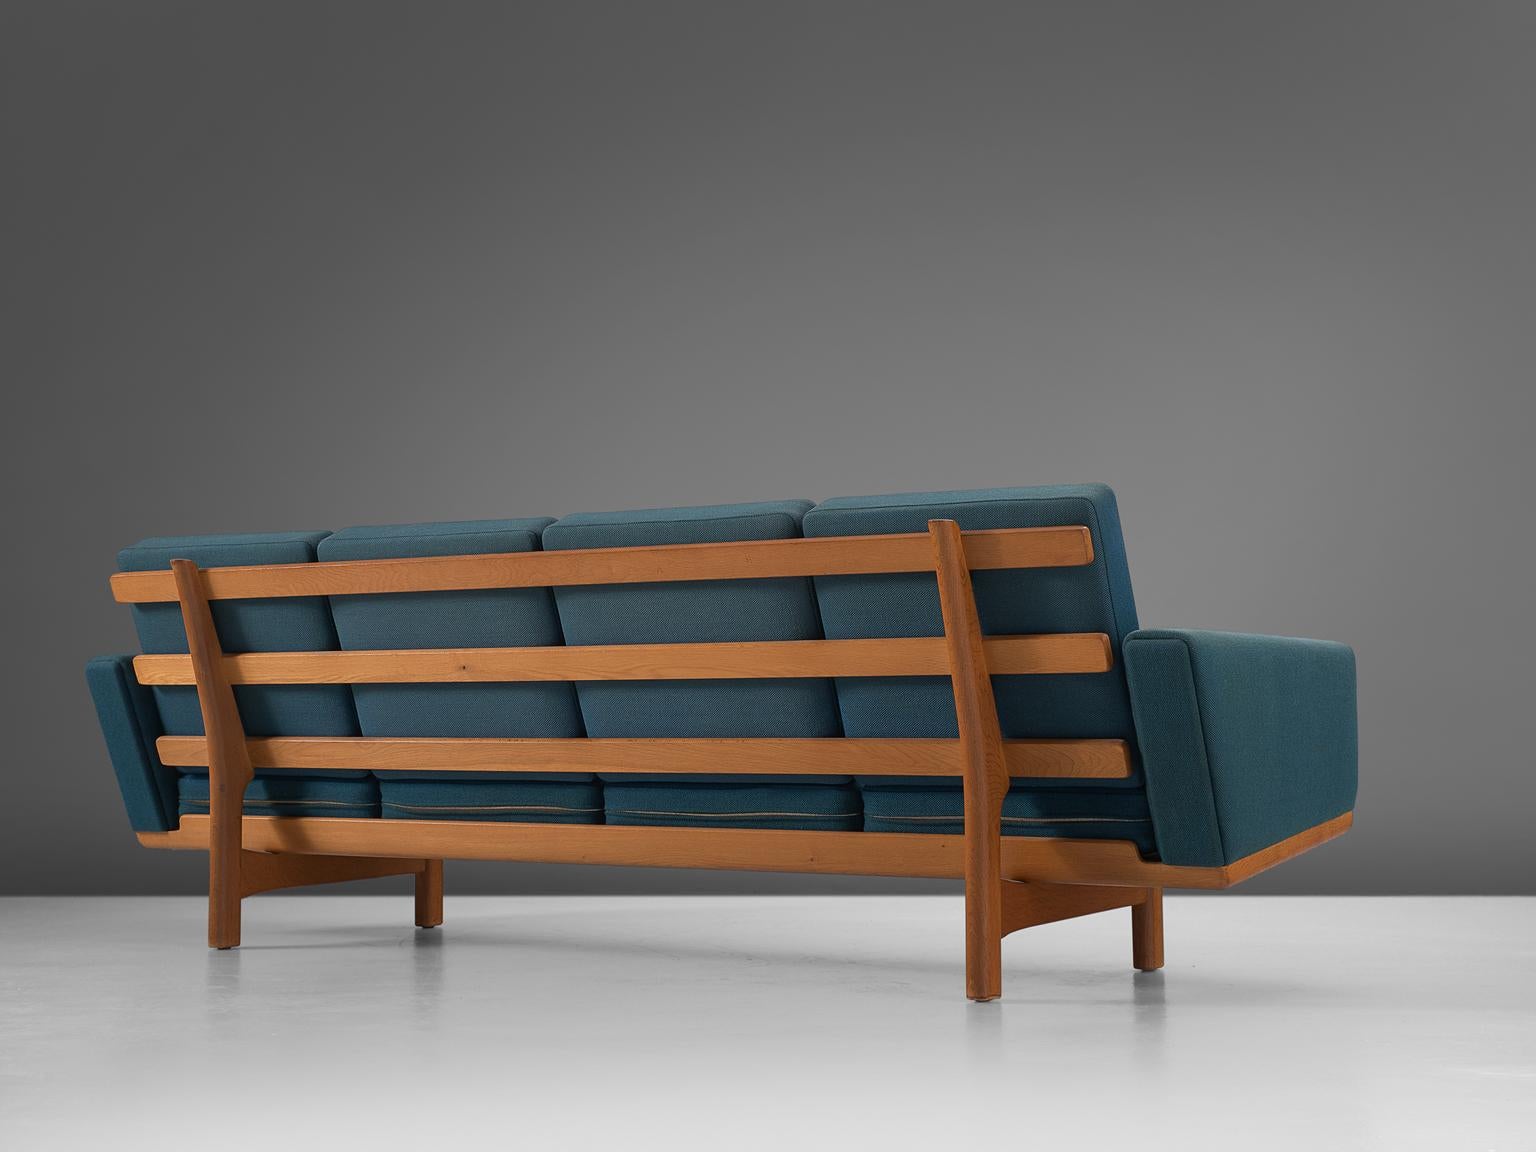 Danish Hans Wegner Sofa in Oak and Petrol Upholstery for GETAMA